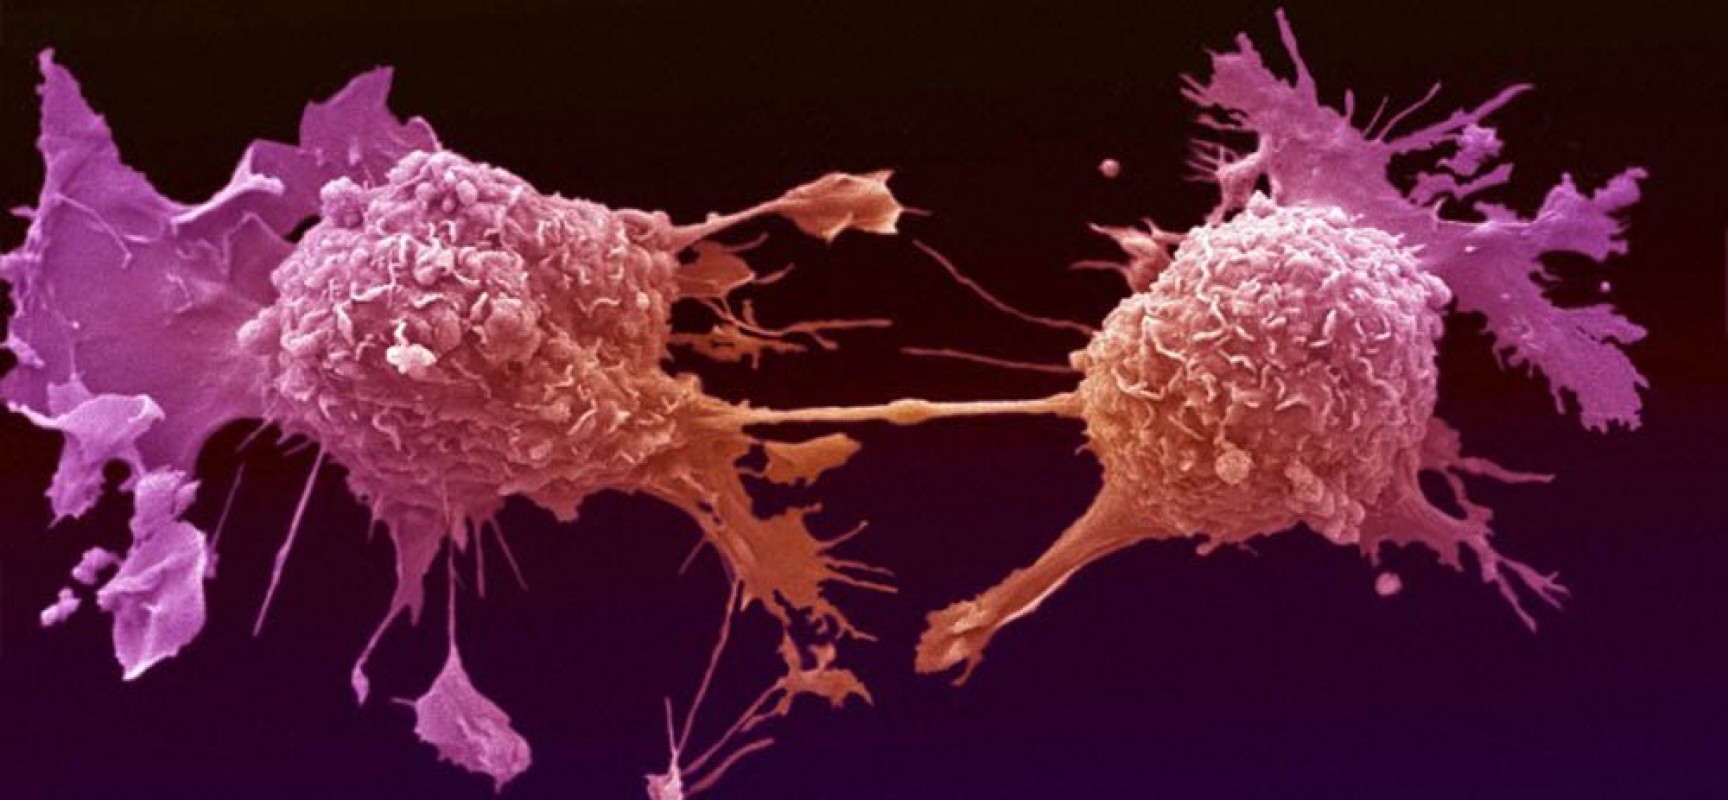 Το γαλακτικό οξύ ευθύνεται για την ανάπτυξη του καρκίνου ;